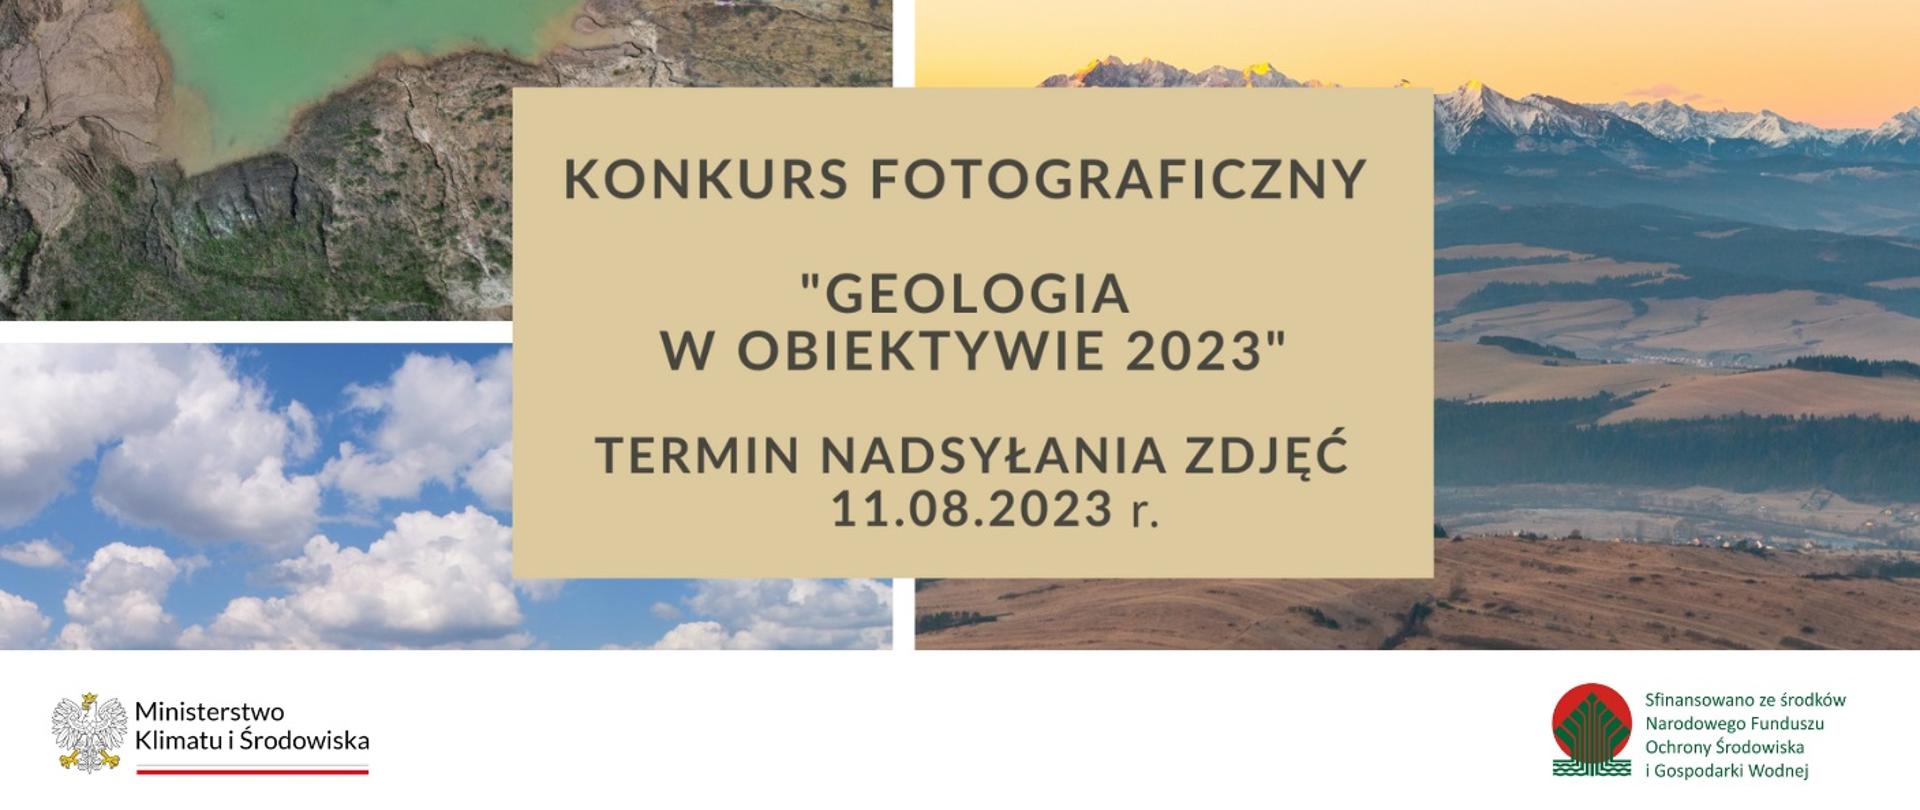 Kilka zdjęć krajobrazów i napis Konkurs fotograficzny "Geologia w obiektywie 2023".